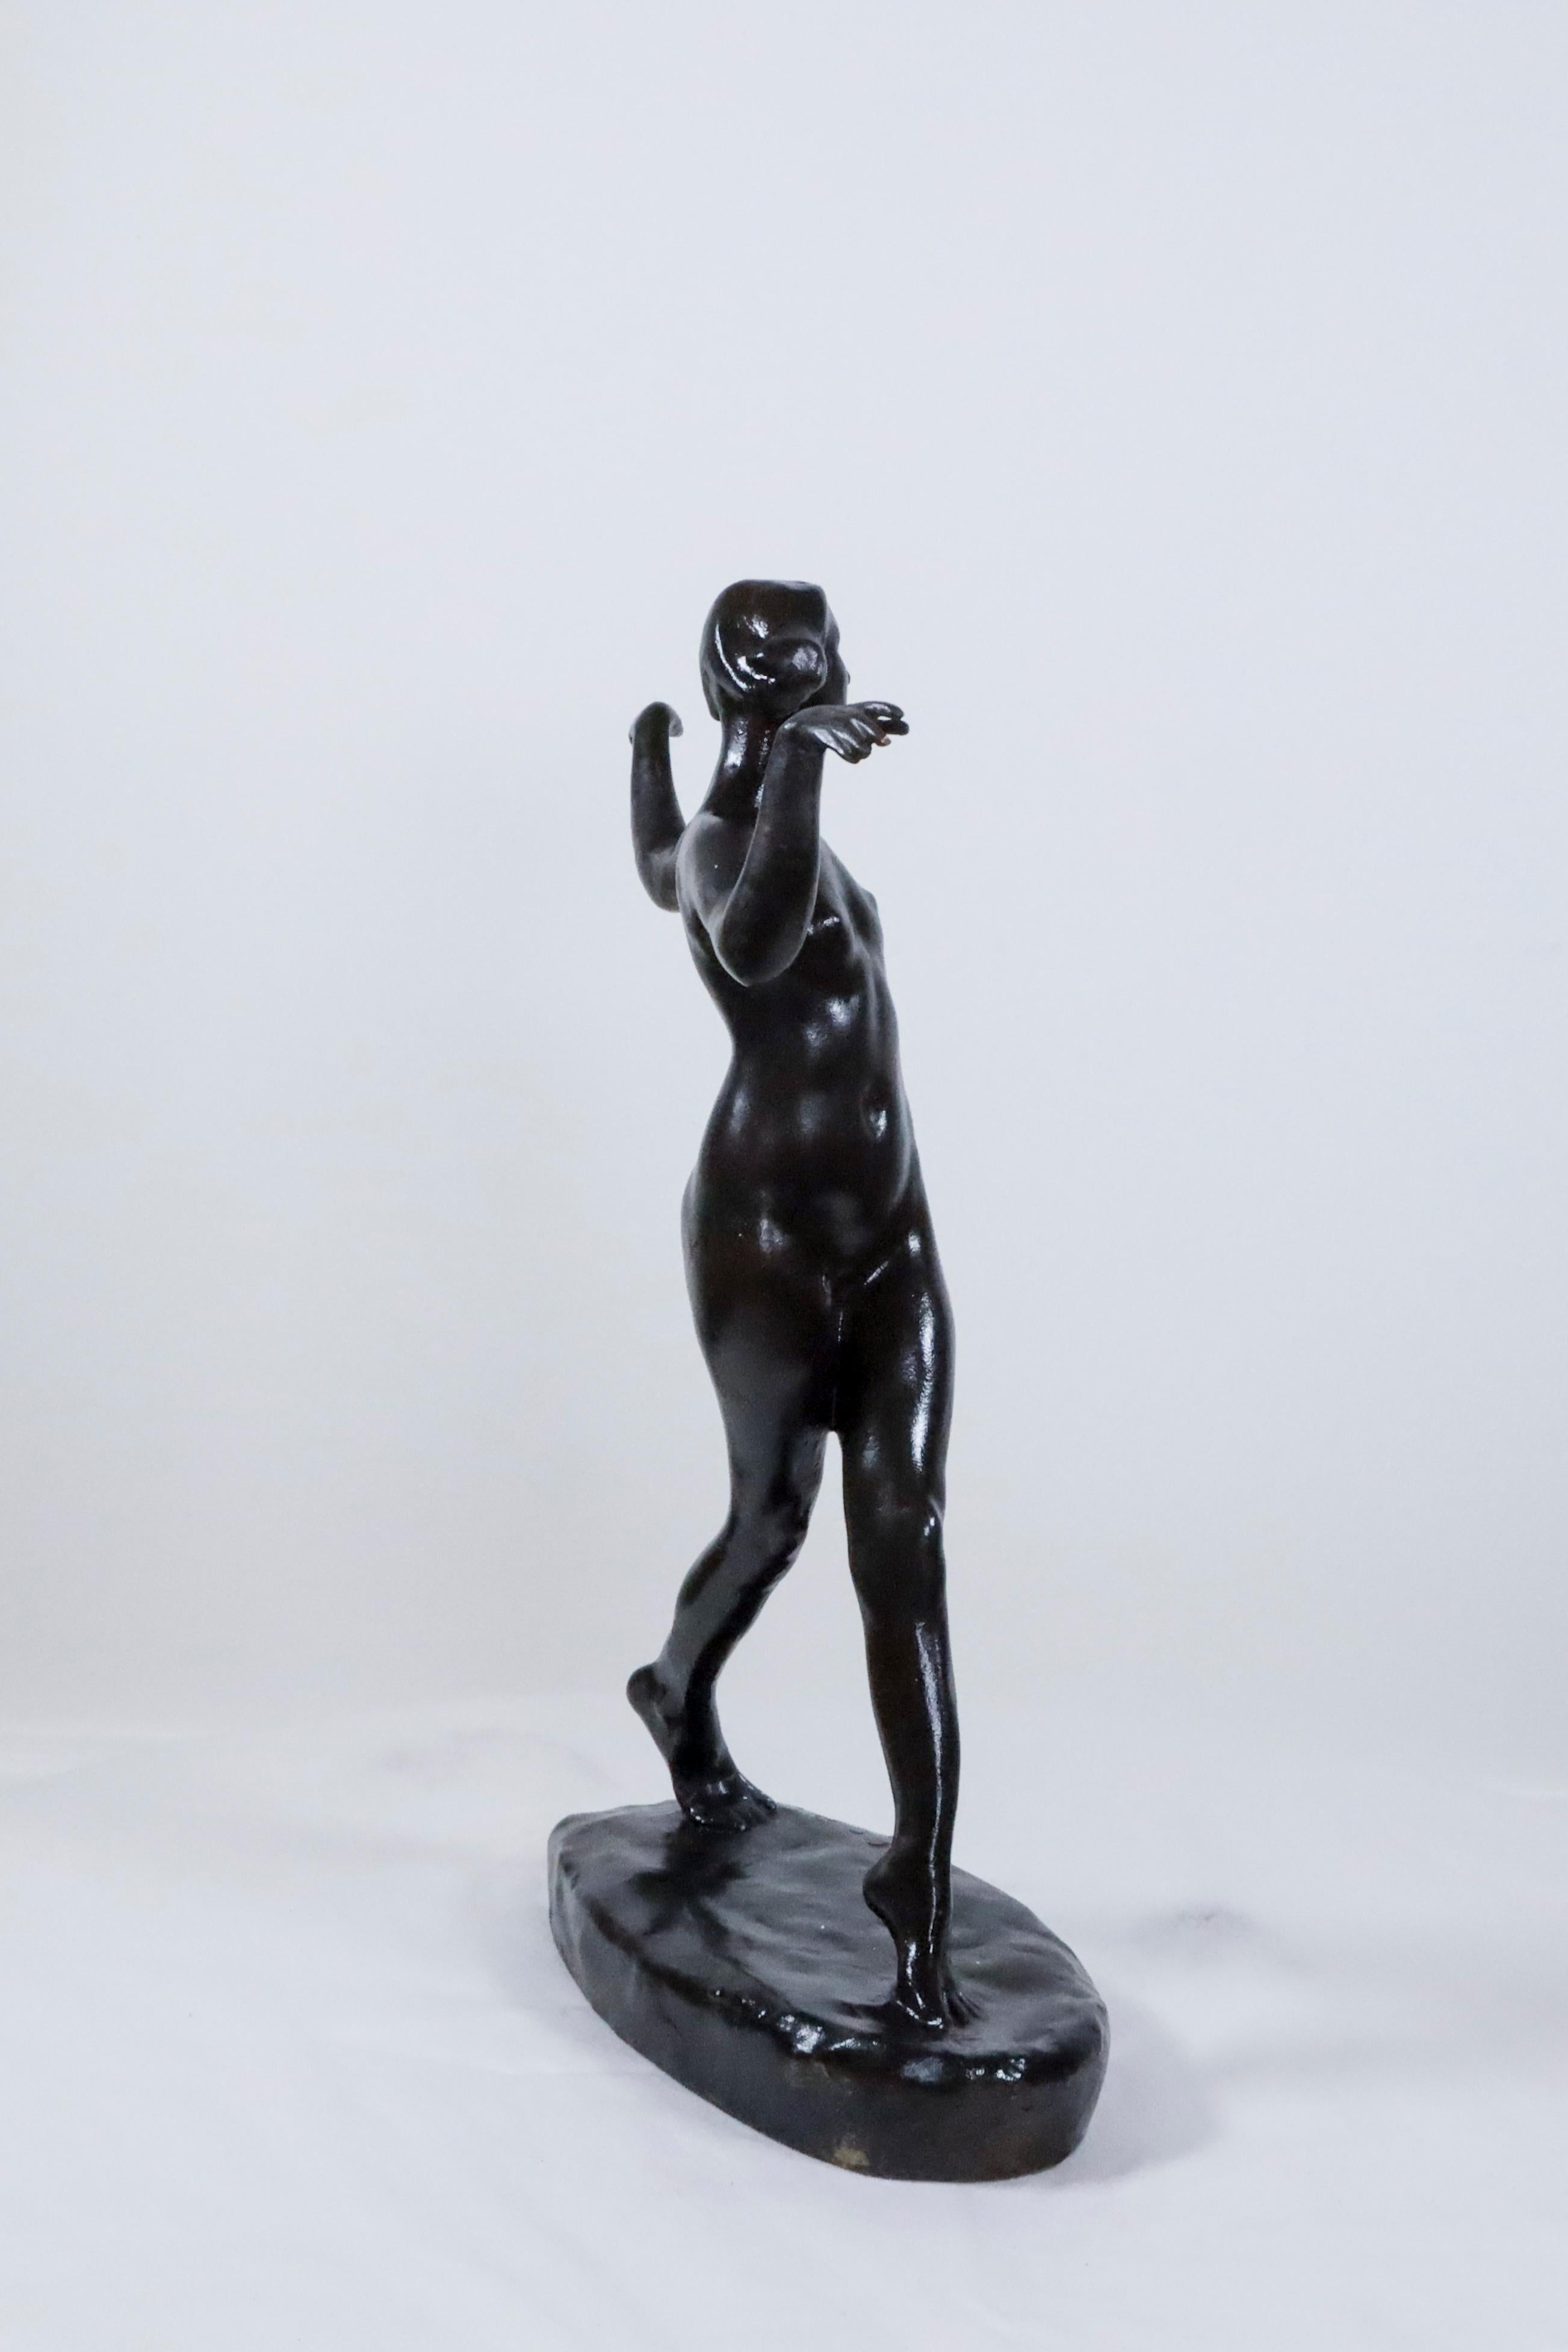 Tanzender Akt Bronze von Charles Rumsey ist eine von vielen Frauenfiguren, die er darstellte.  Er ist vor allem für seine Skulpturen von Pferden, Polospielern, Wildtieren und Hunden bekannt, was vor allem darauf zurückzuführen ist, dass er ein